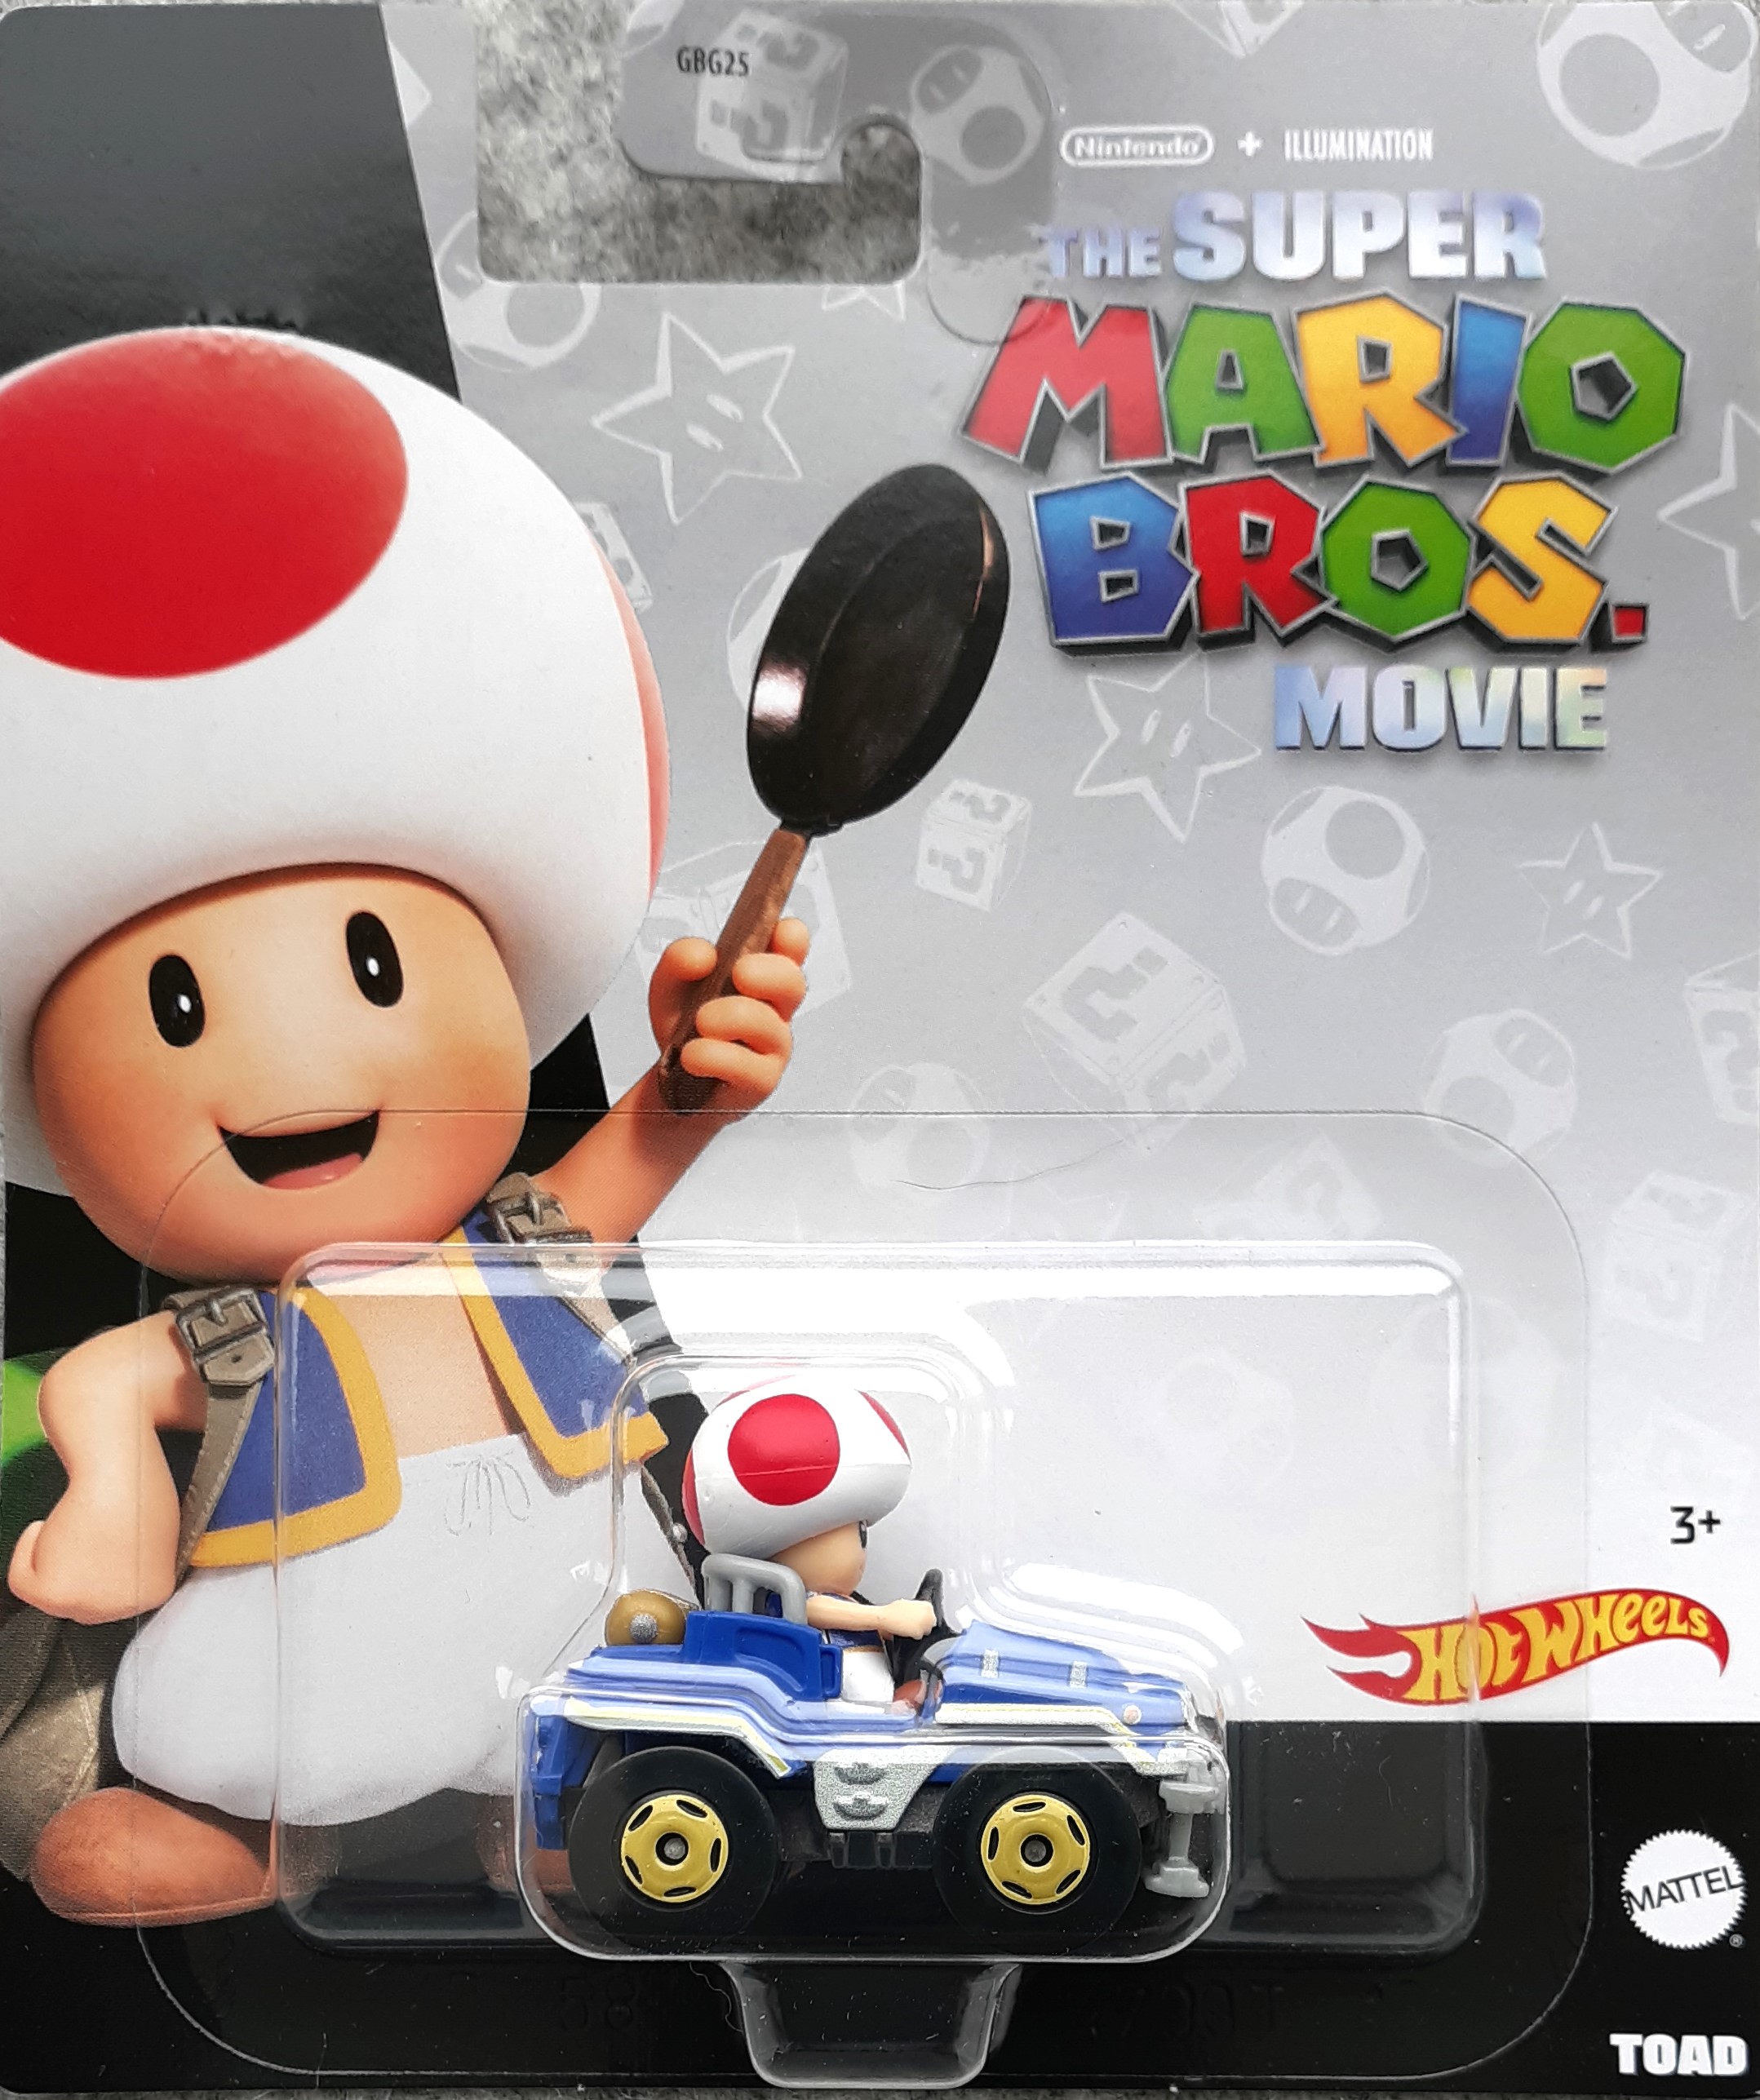 Metal Mario makes his Hot Wheels debut this summer